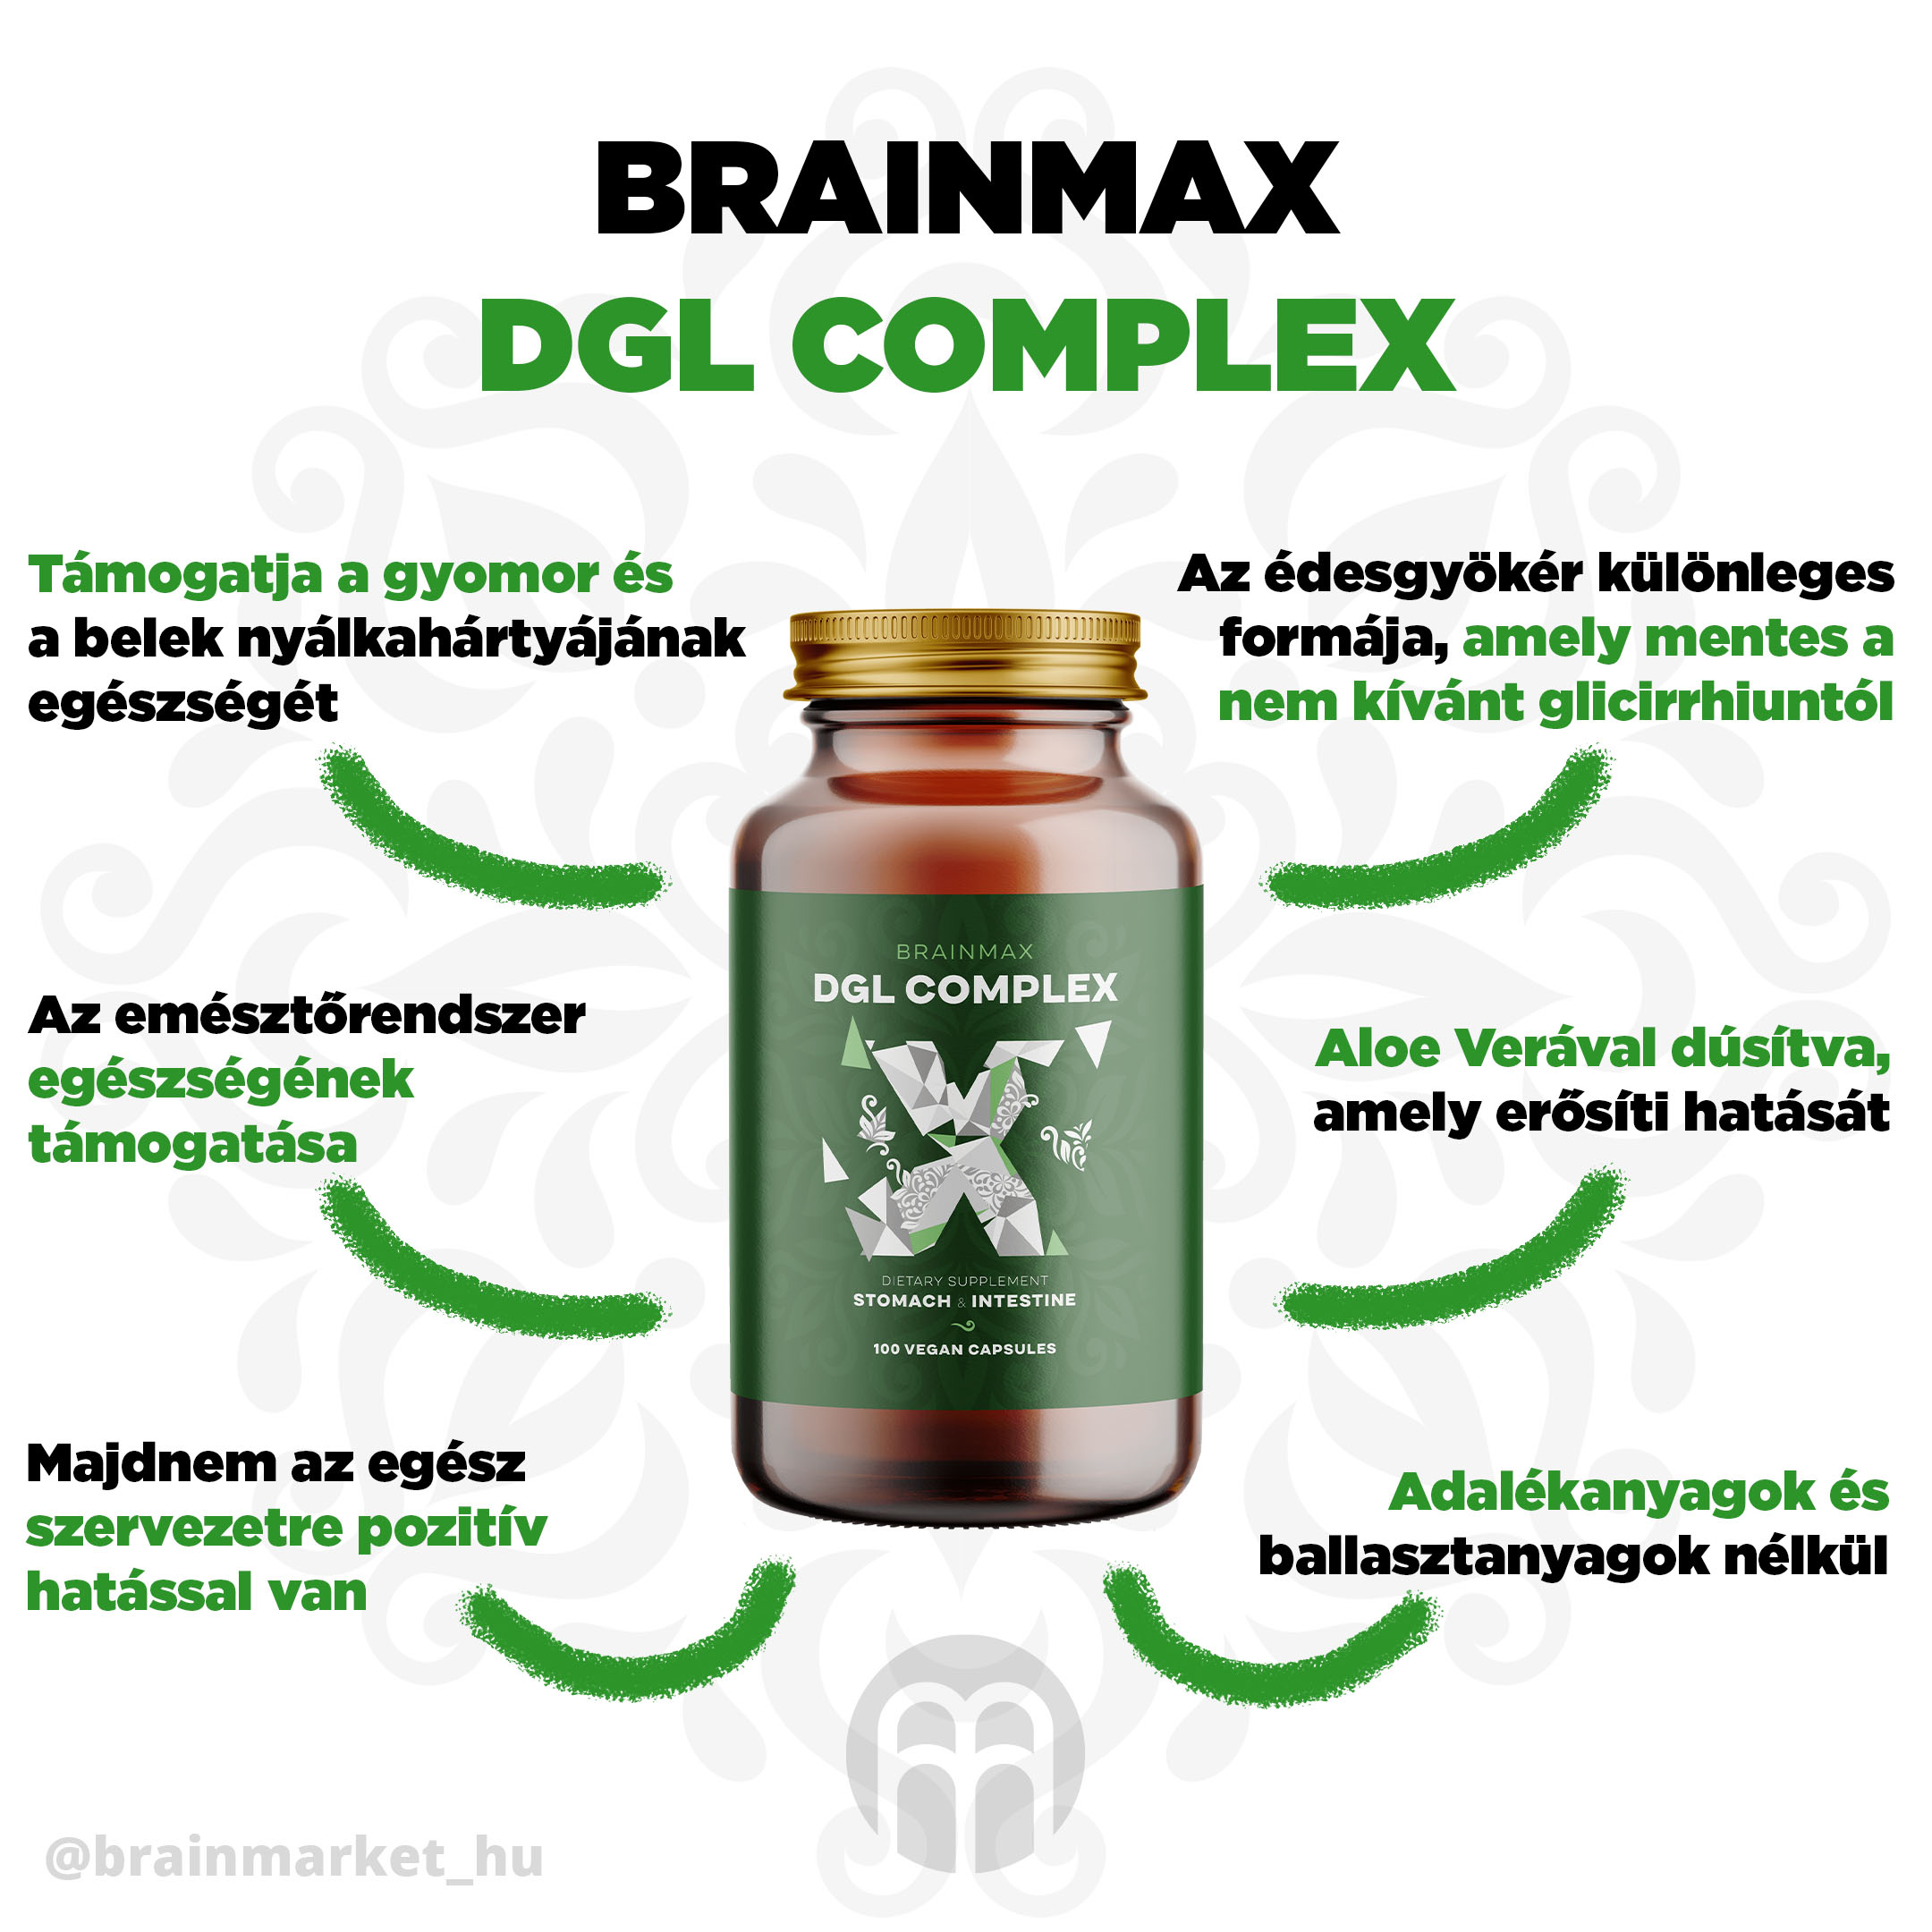 BrainMax DGL Complex (deglycyrrhizinizált édesgyökér), 100 gyógynövényes kapszula